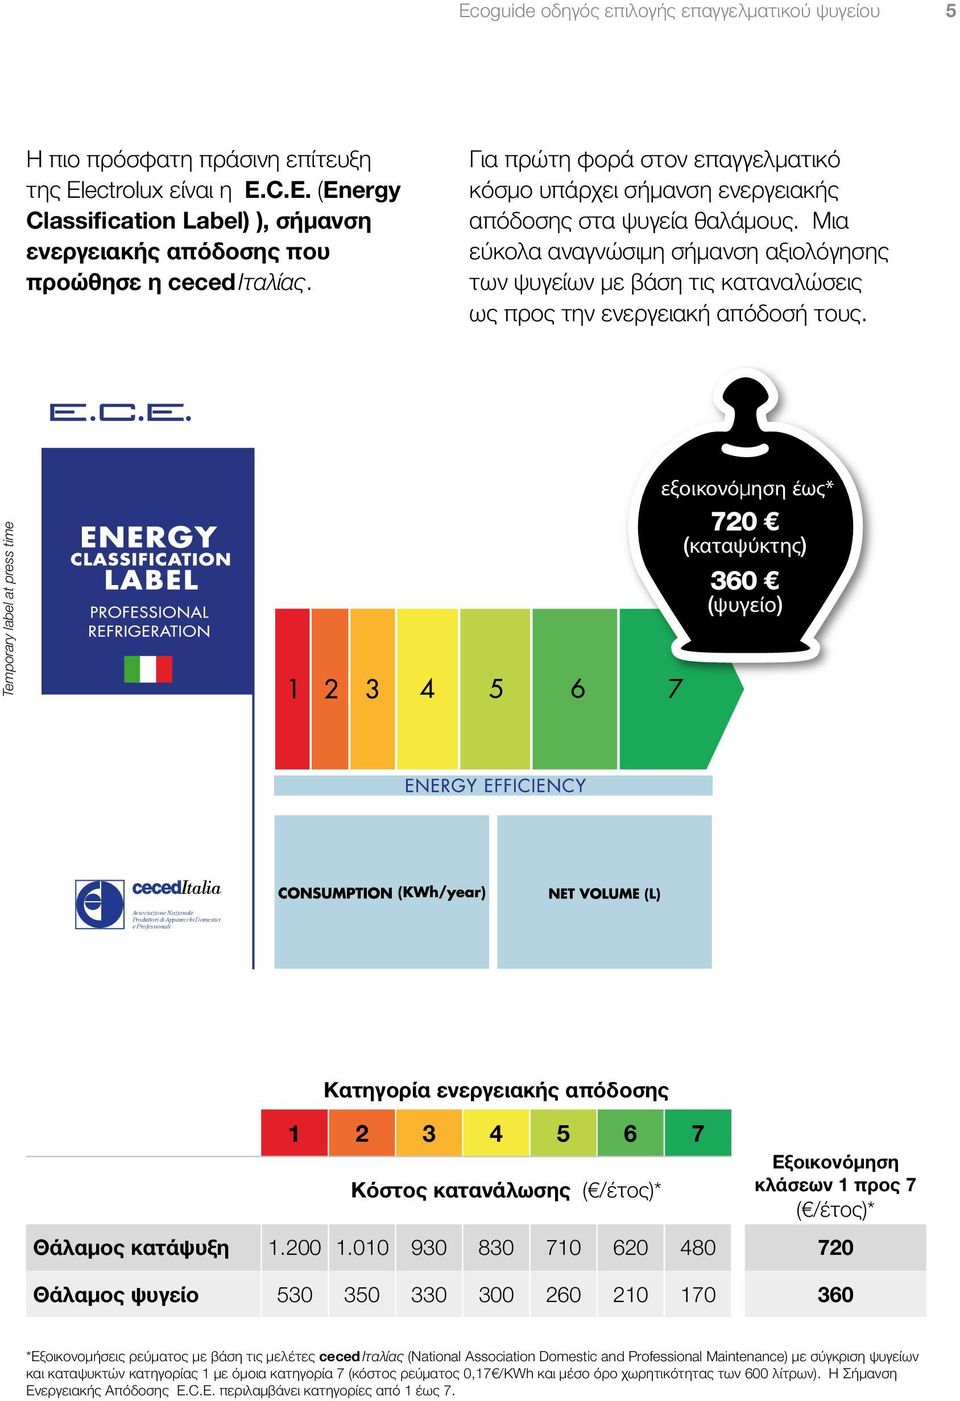 Μια εύκολα αναγνώσιμη σήμανση αξιολόγησης των ψυγείων με βάση τις καταναλώσεις ως προς την ενεργειακή απόδοσή τους.